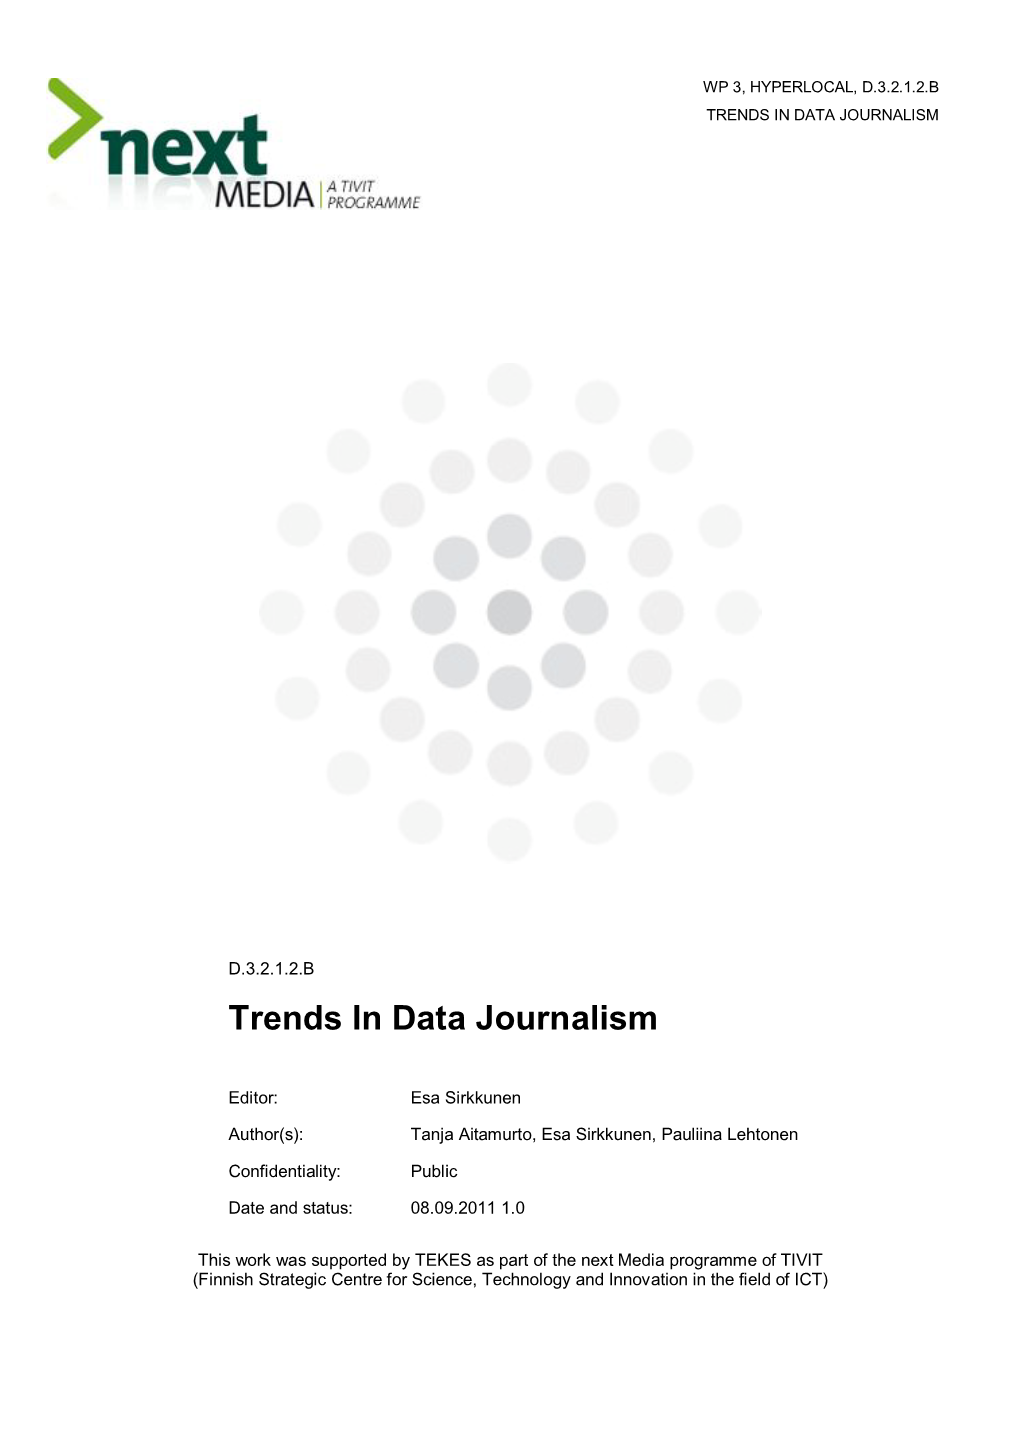 B Report: Hyperlocal Trends in Data Journalism